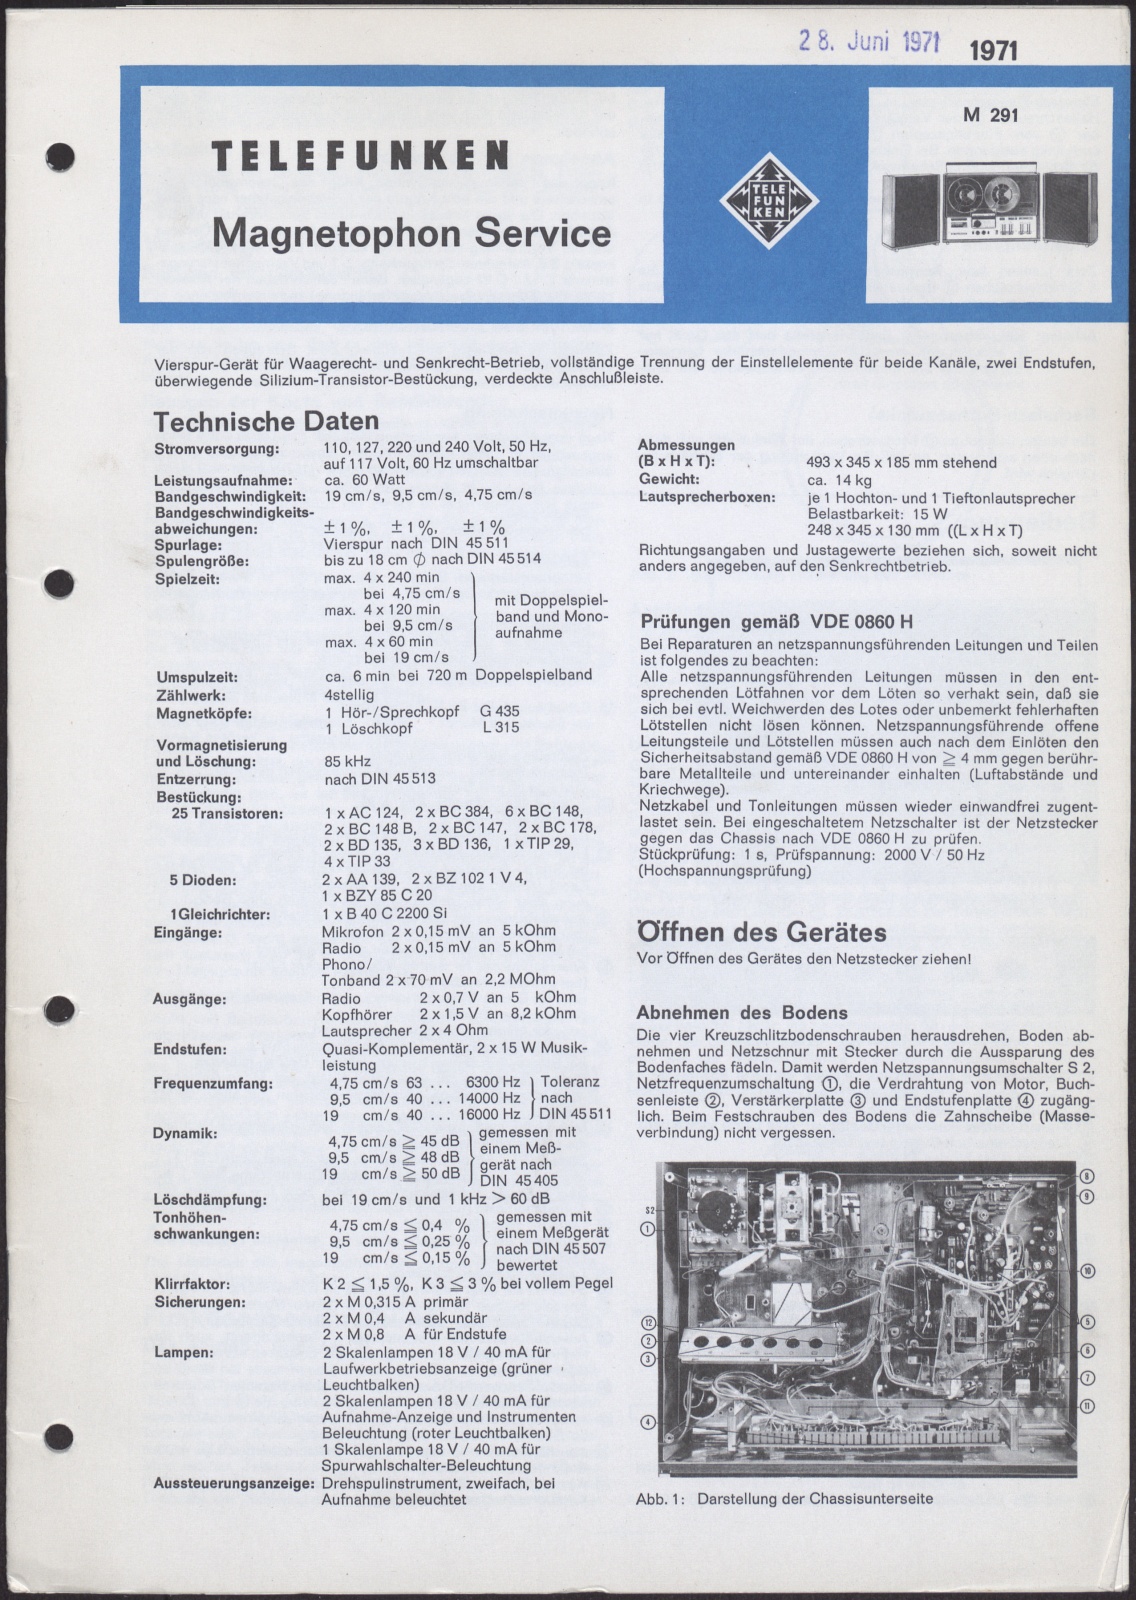 Bedienungsanleitung: Telefunken Magnetophon Service M 291 (Stiftung Deutsches Technikmuseum Berlin CC0)